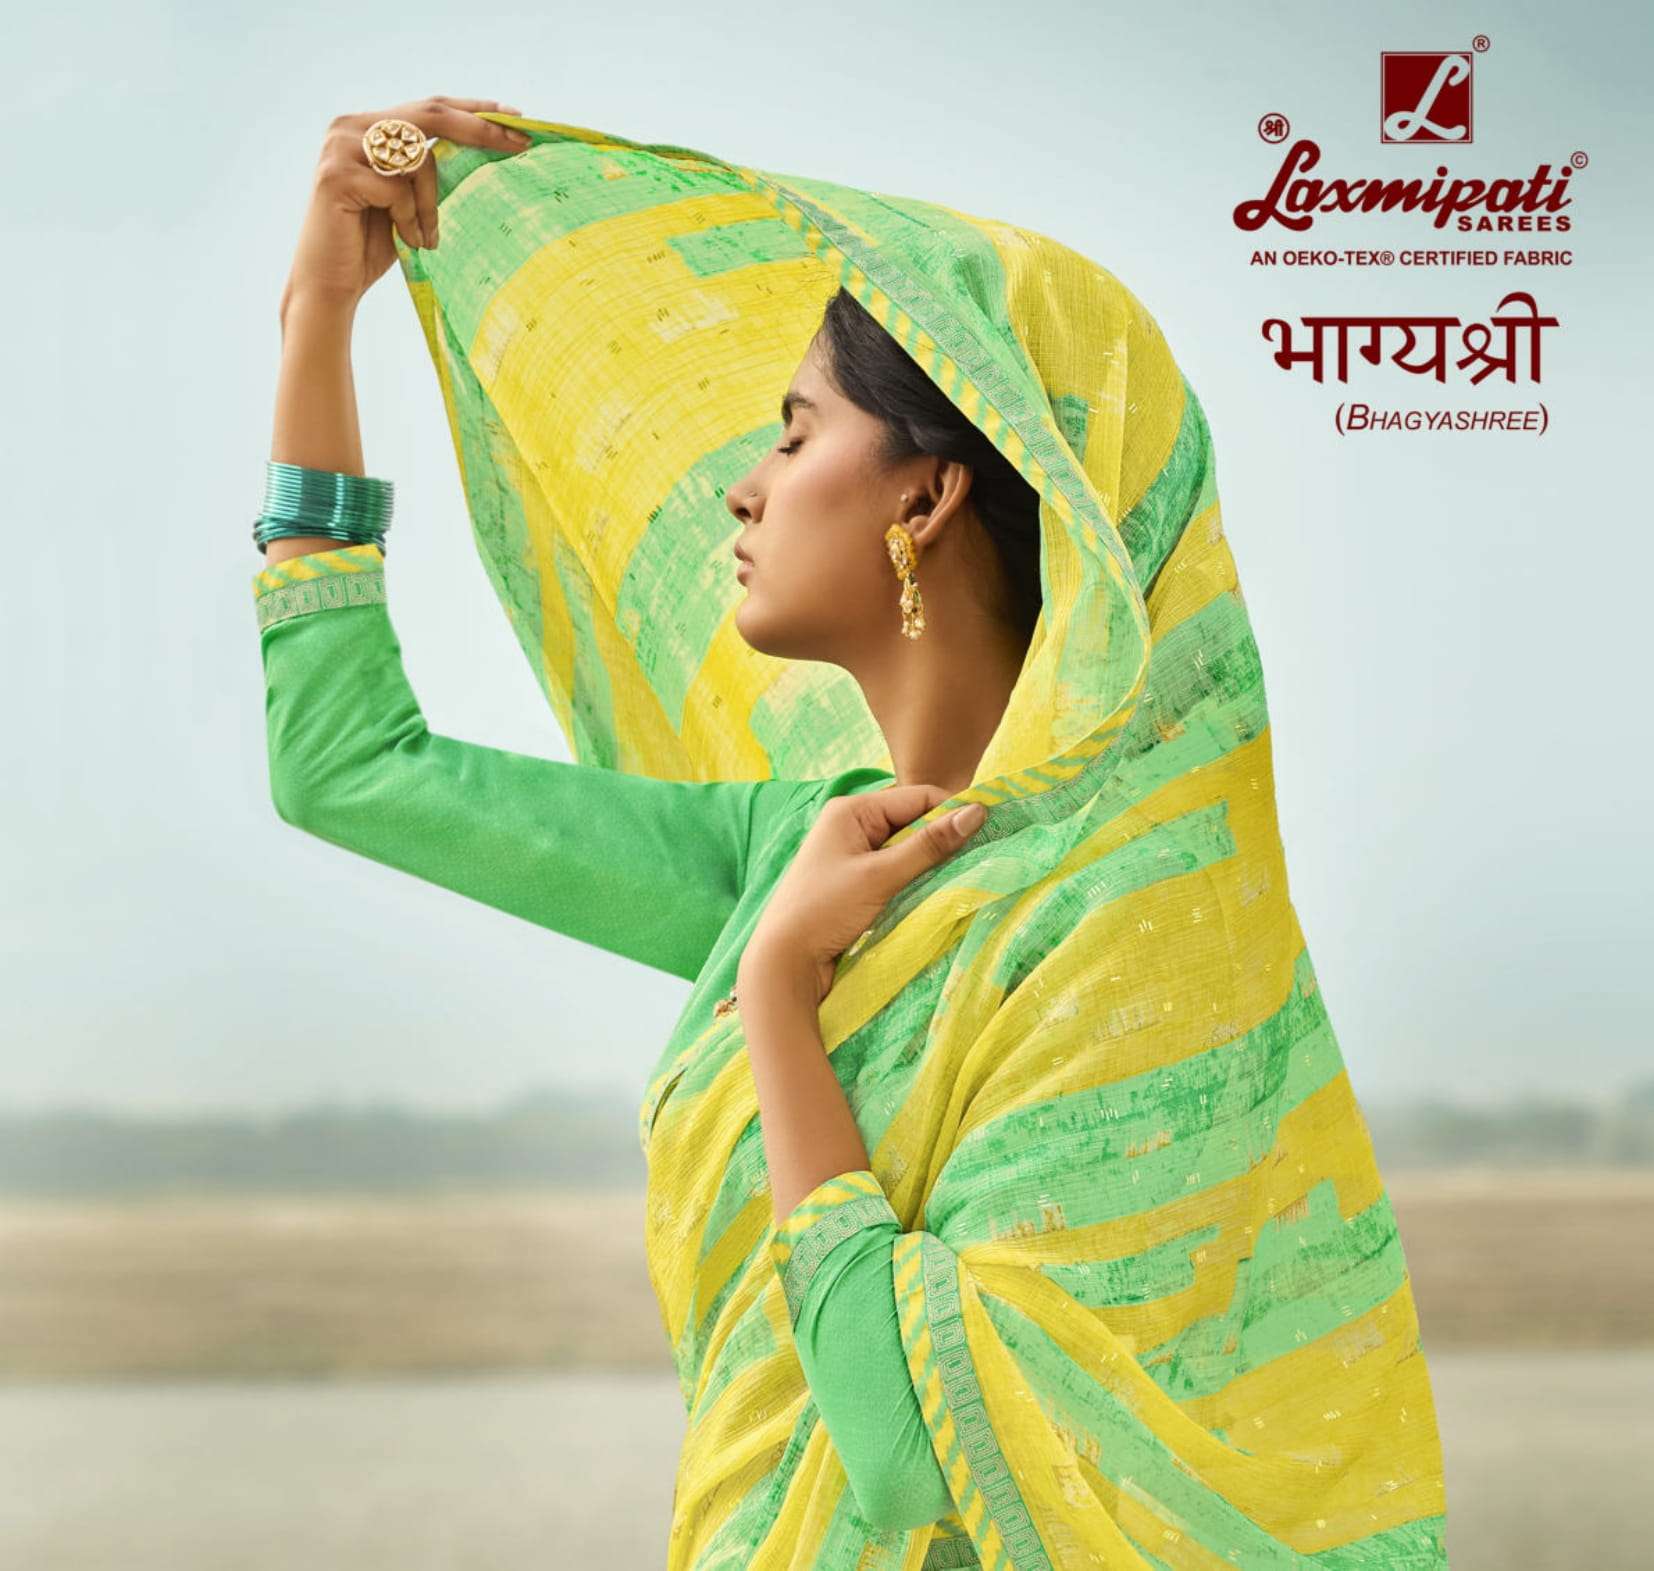 laxmipati sarees bhagyashree 7414-7445 series beautiful saree wholesale price 